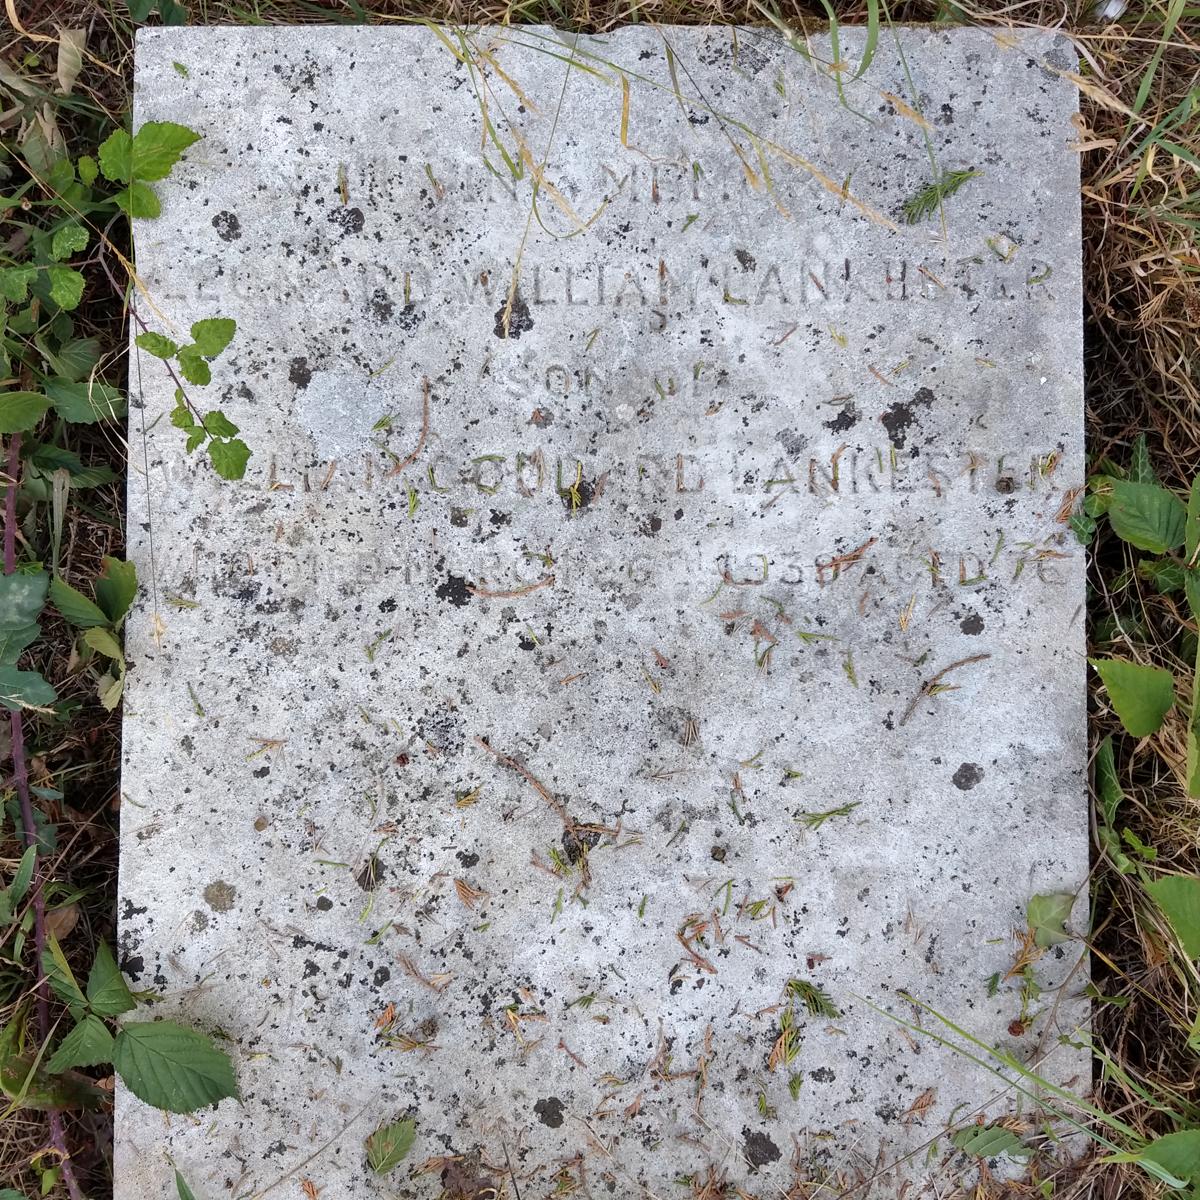 Grave of Leonard William Lankester